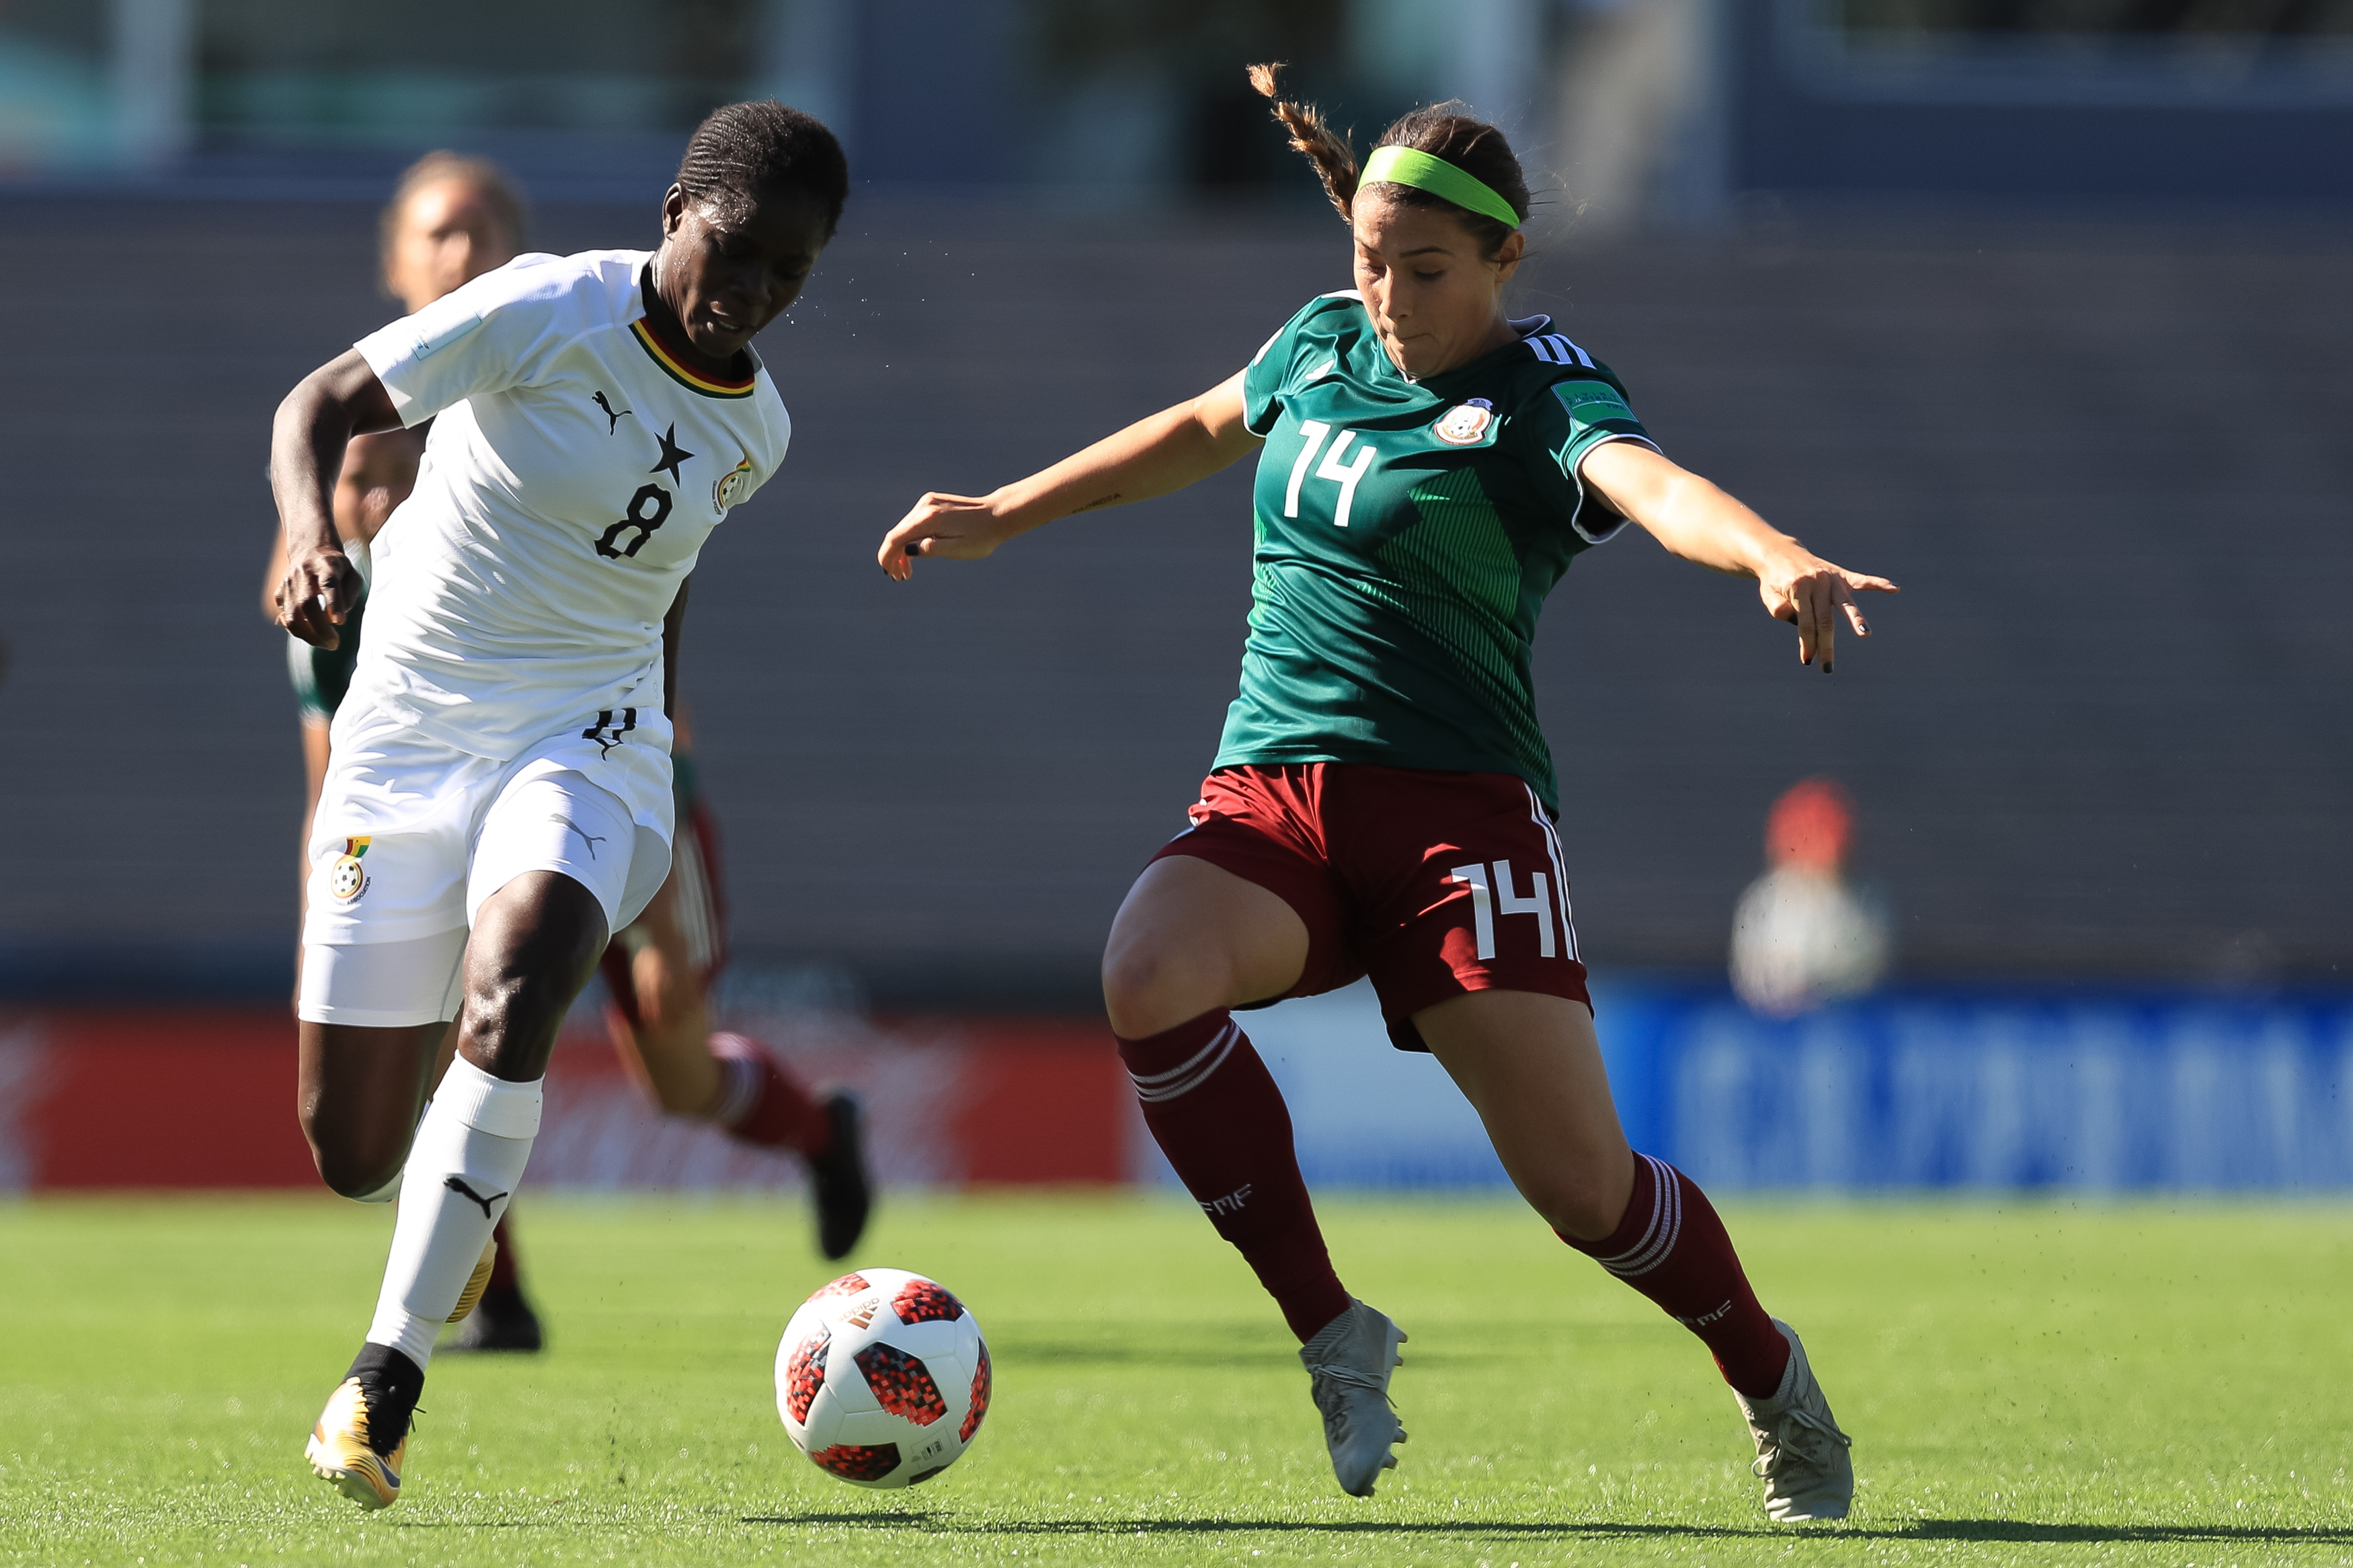 U17WWC: Ghana suffer quarterfinals defeat to Mexico